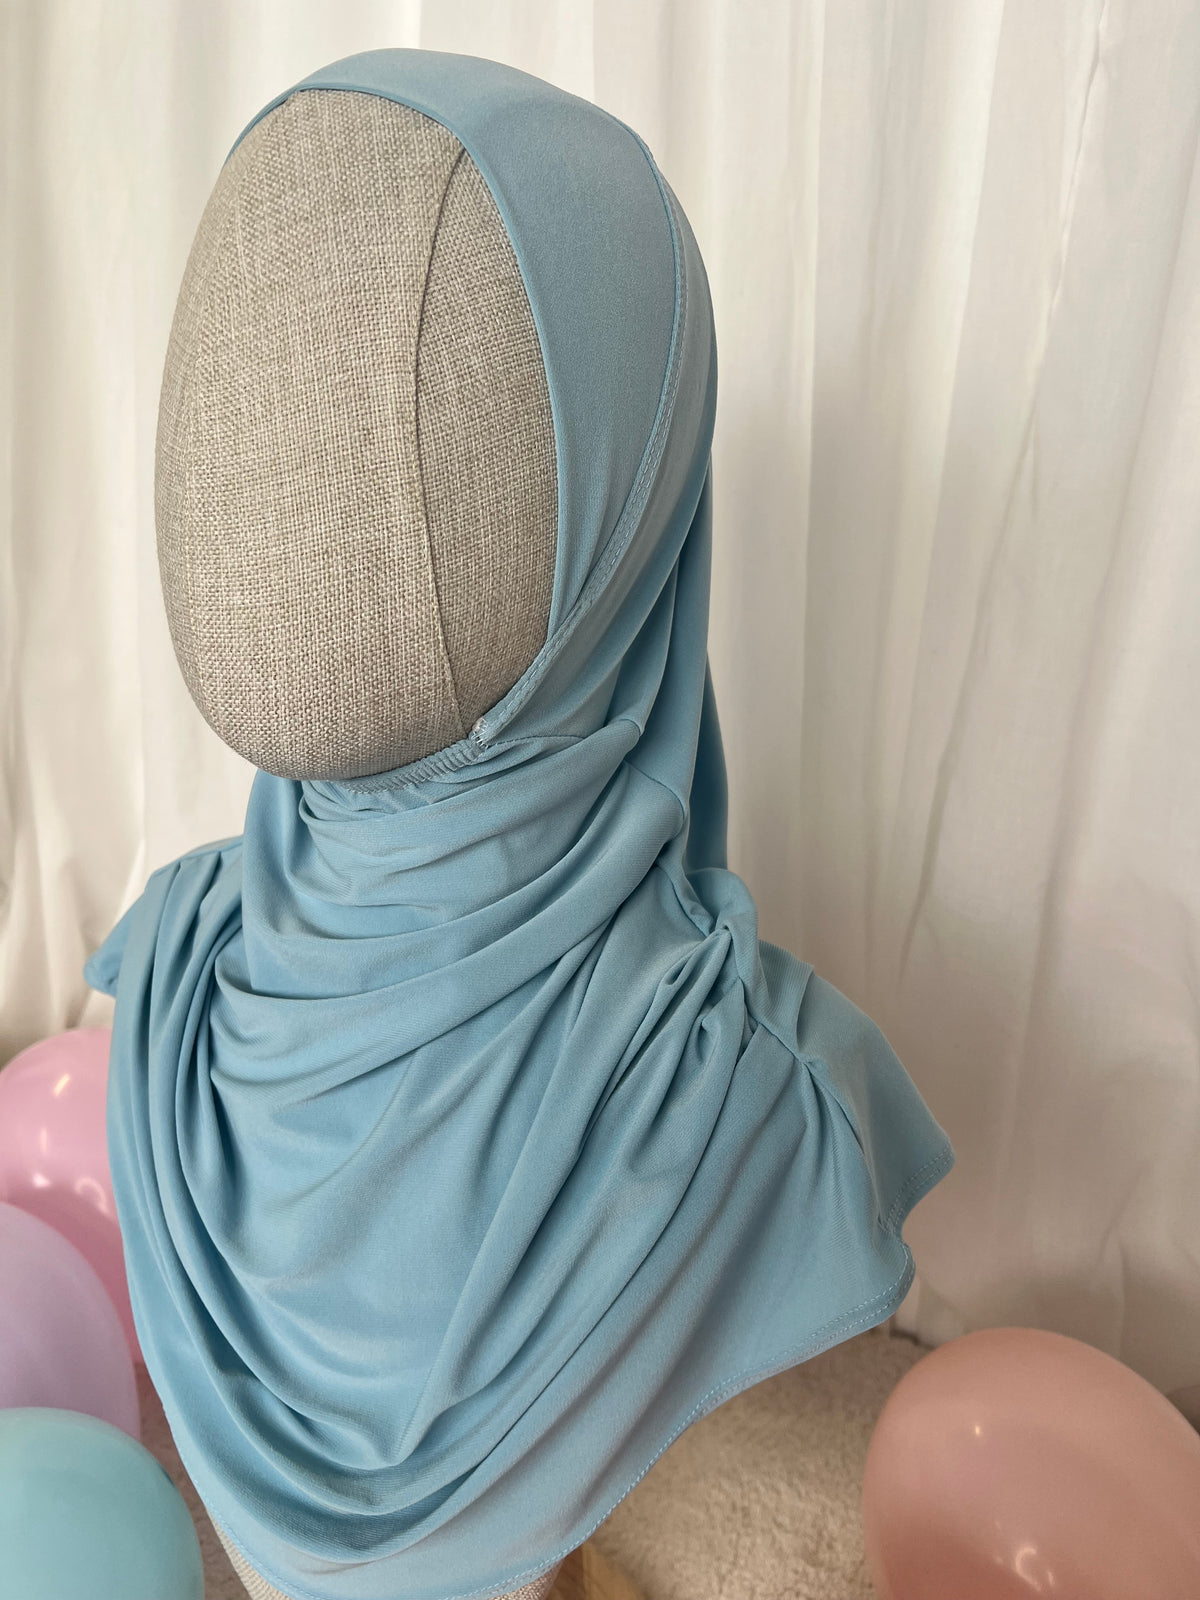 Children's Hijab - Baby Blue